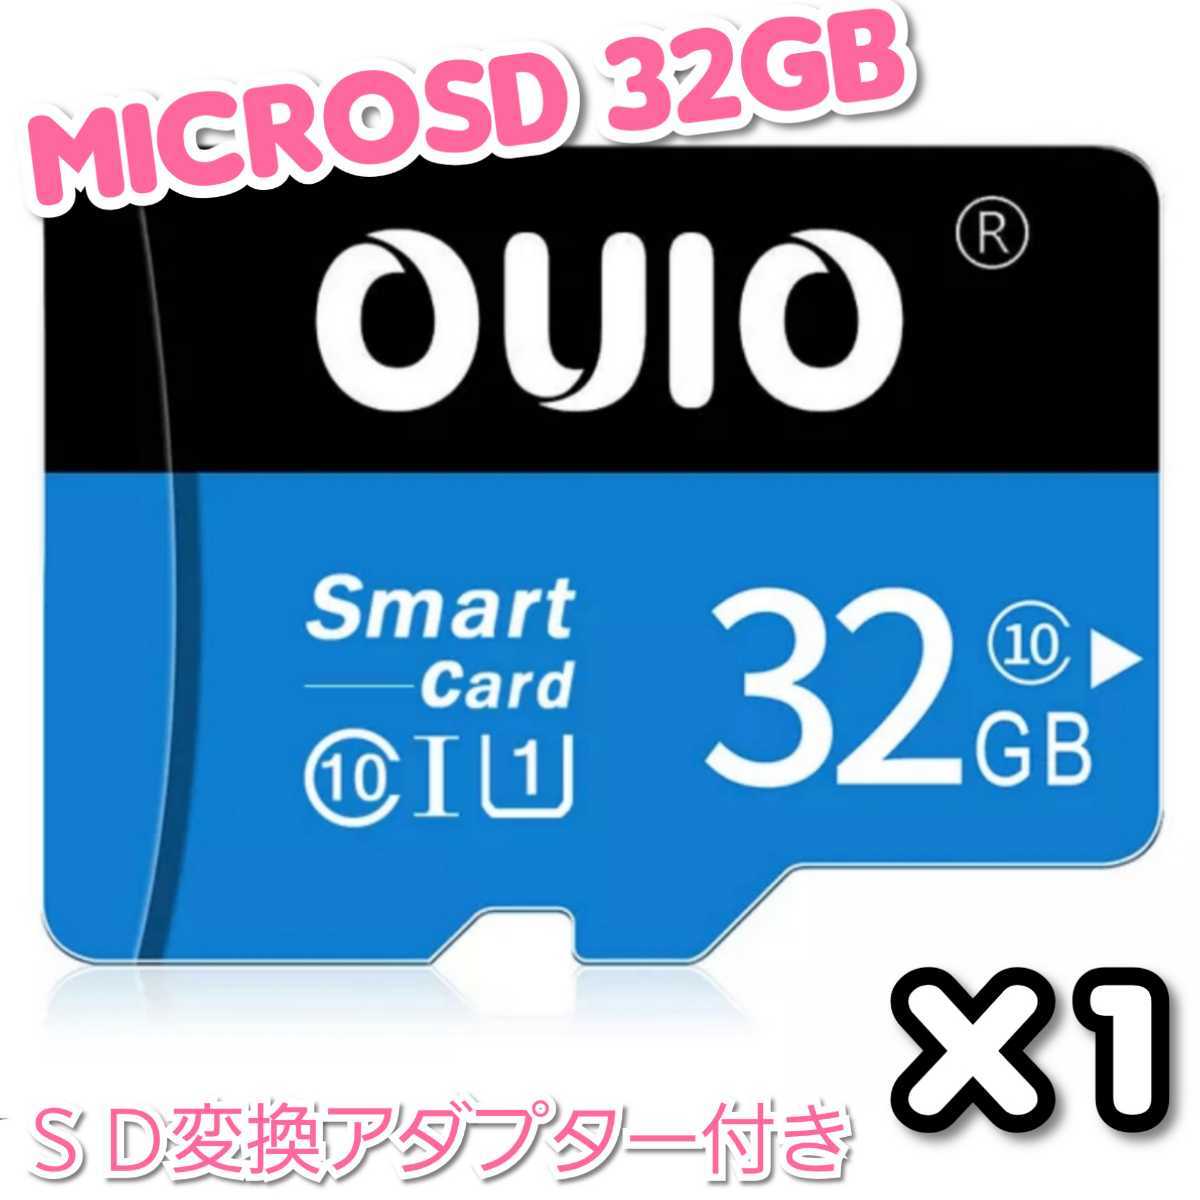 【送料無料】マイクロSDカード 32GB 1枚 class10 UHS-I 1個 microSD microSDHC マイクロSD OUIO 32GB BLACK-BLUE_画像2